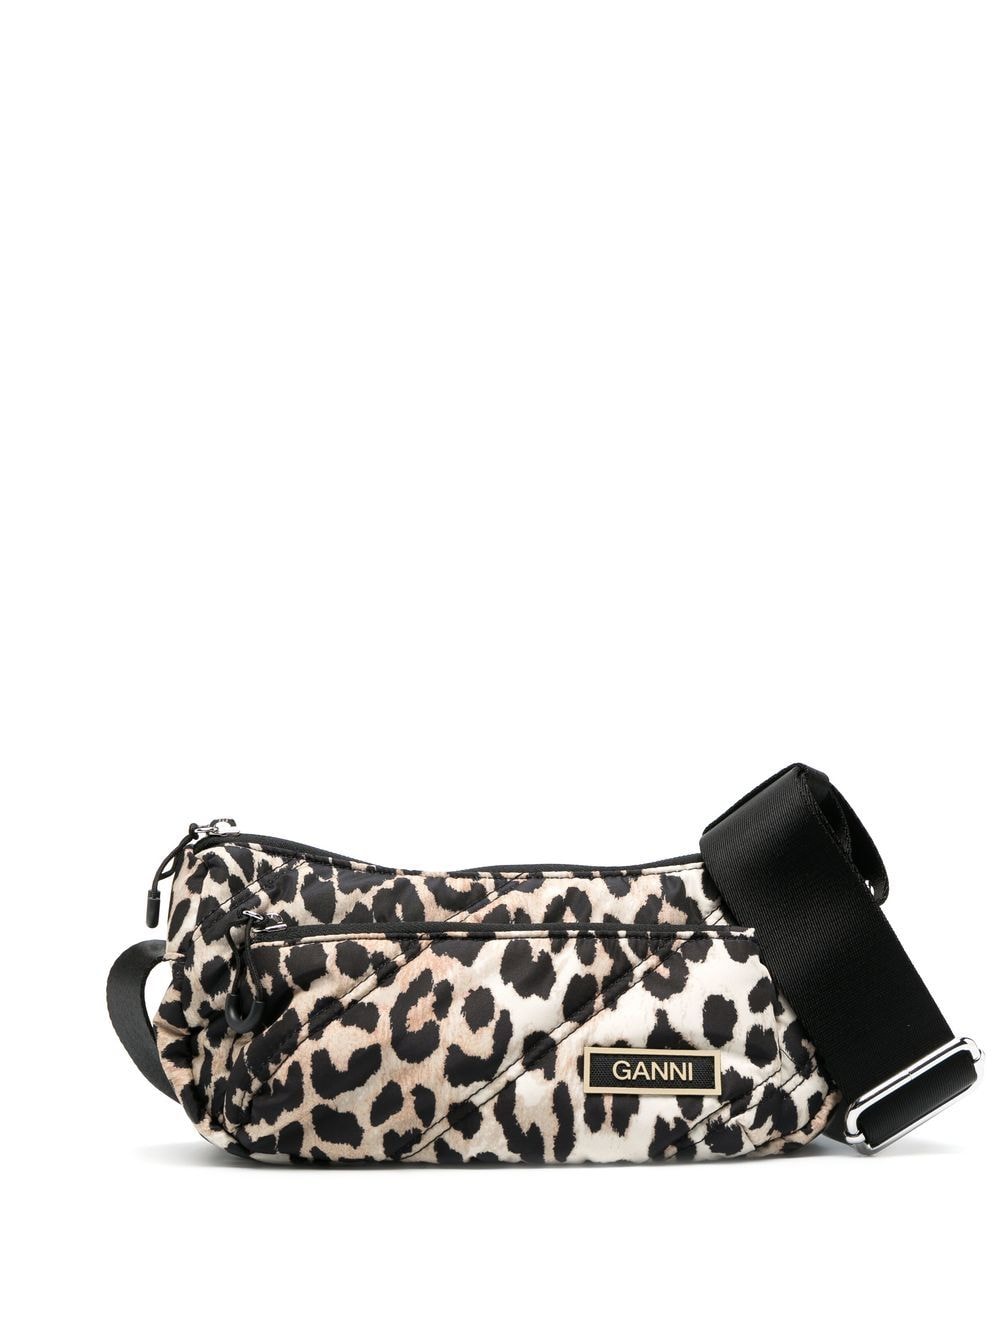 GANNI quilted leopard-print bag - Black